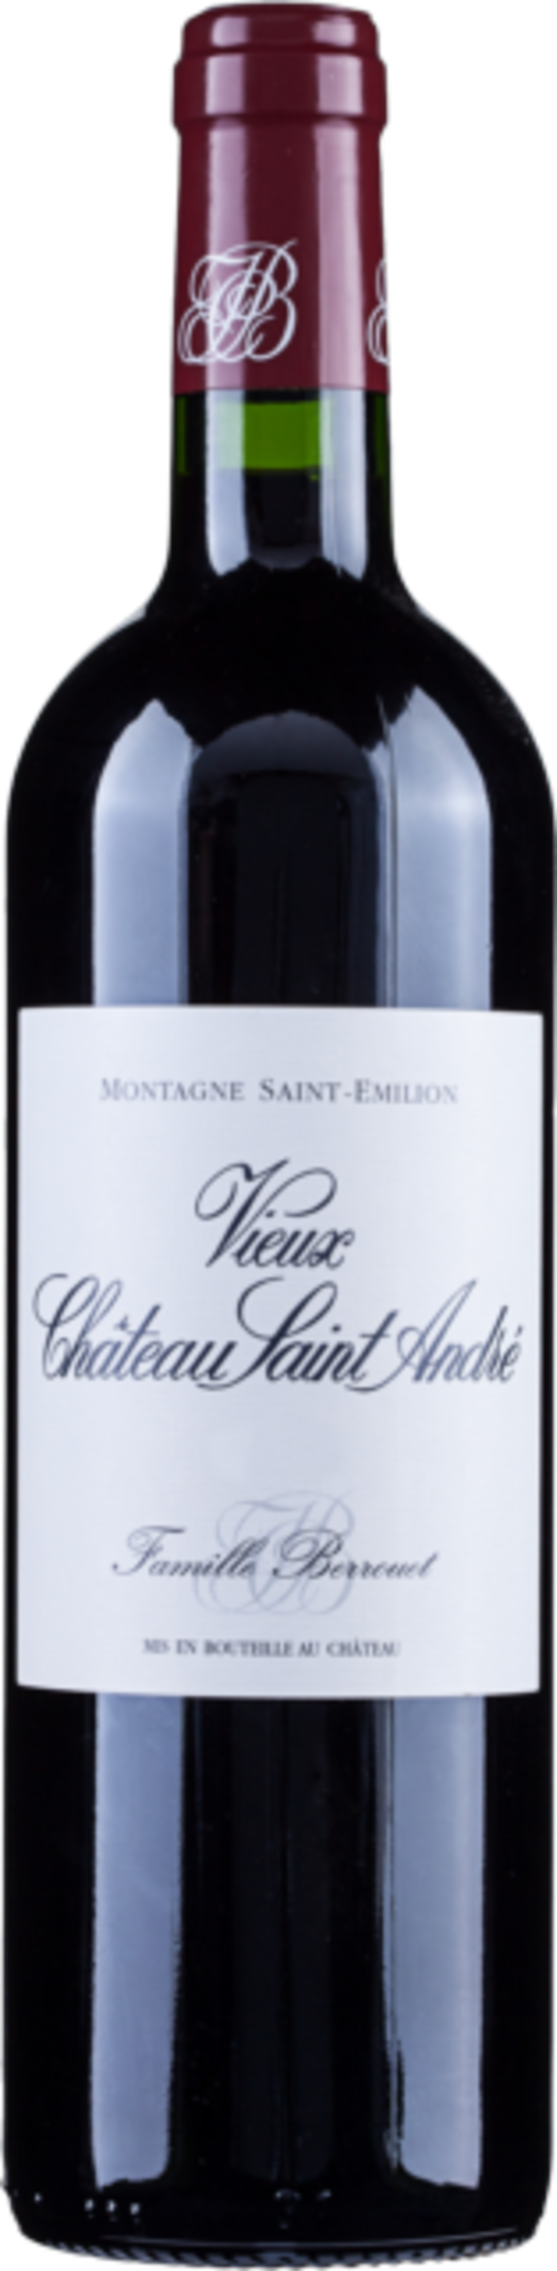 Rượu vang đỏ Pháp, Vieux Chateau Saint Andre 2019